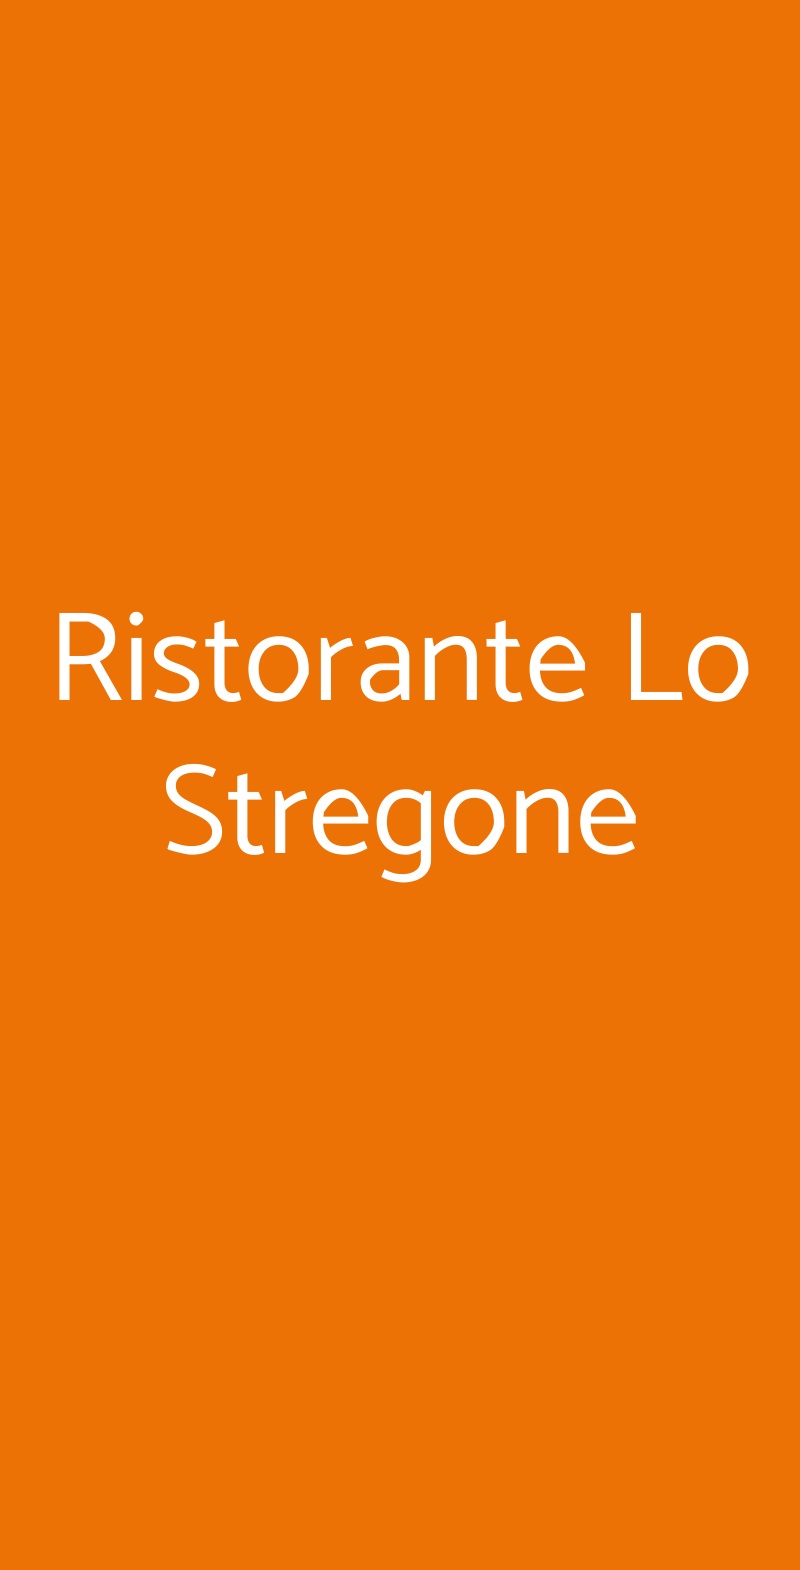 Ristorante Lo Stregone Roma menù 1 pagina